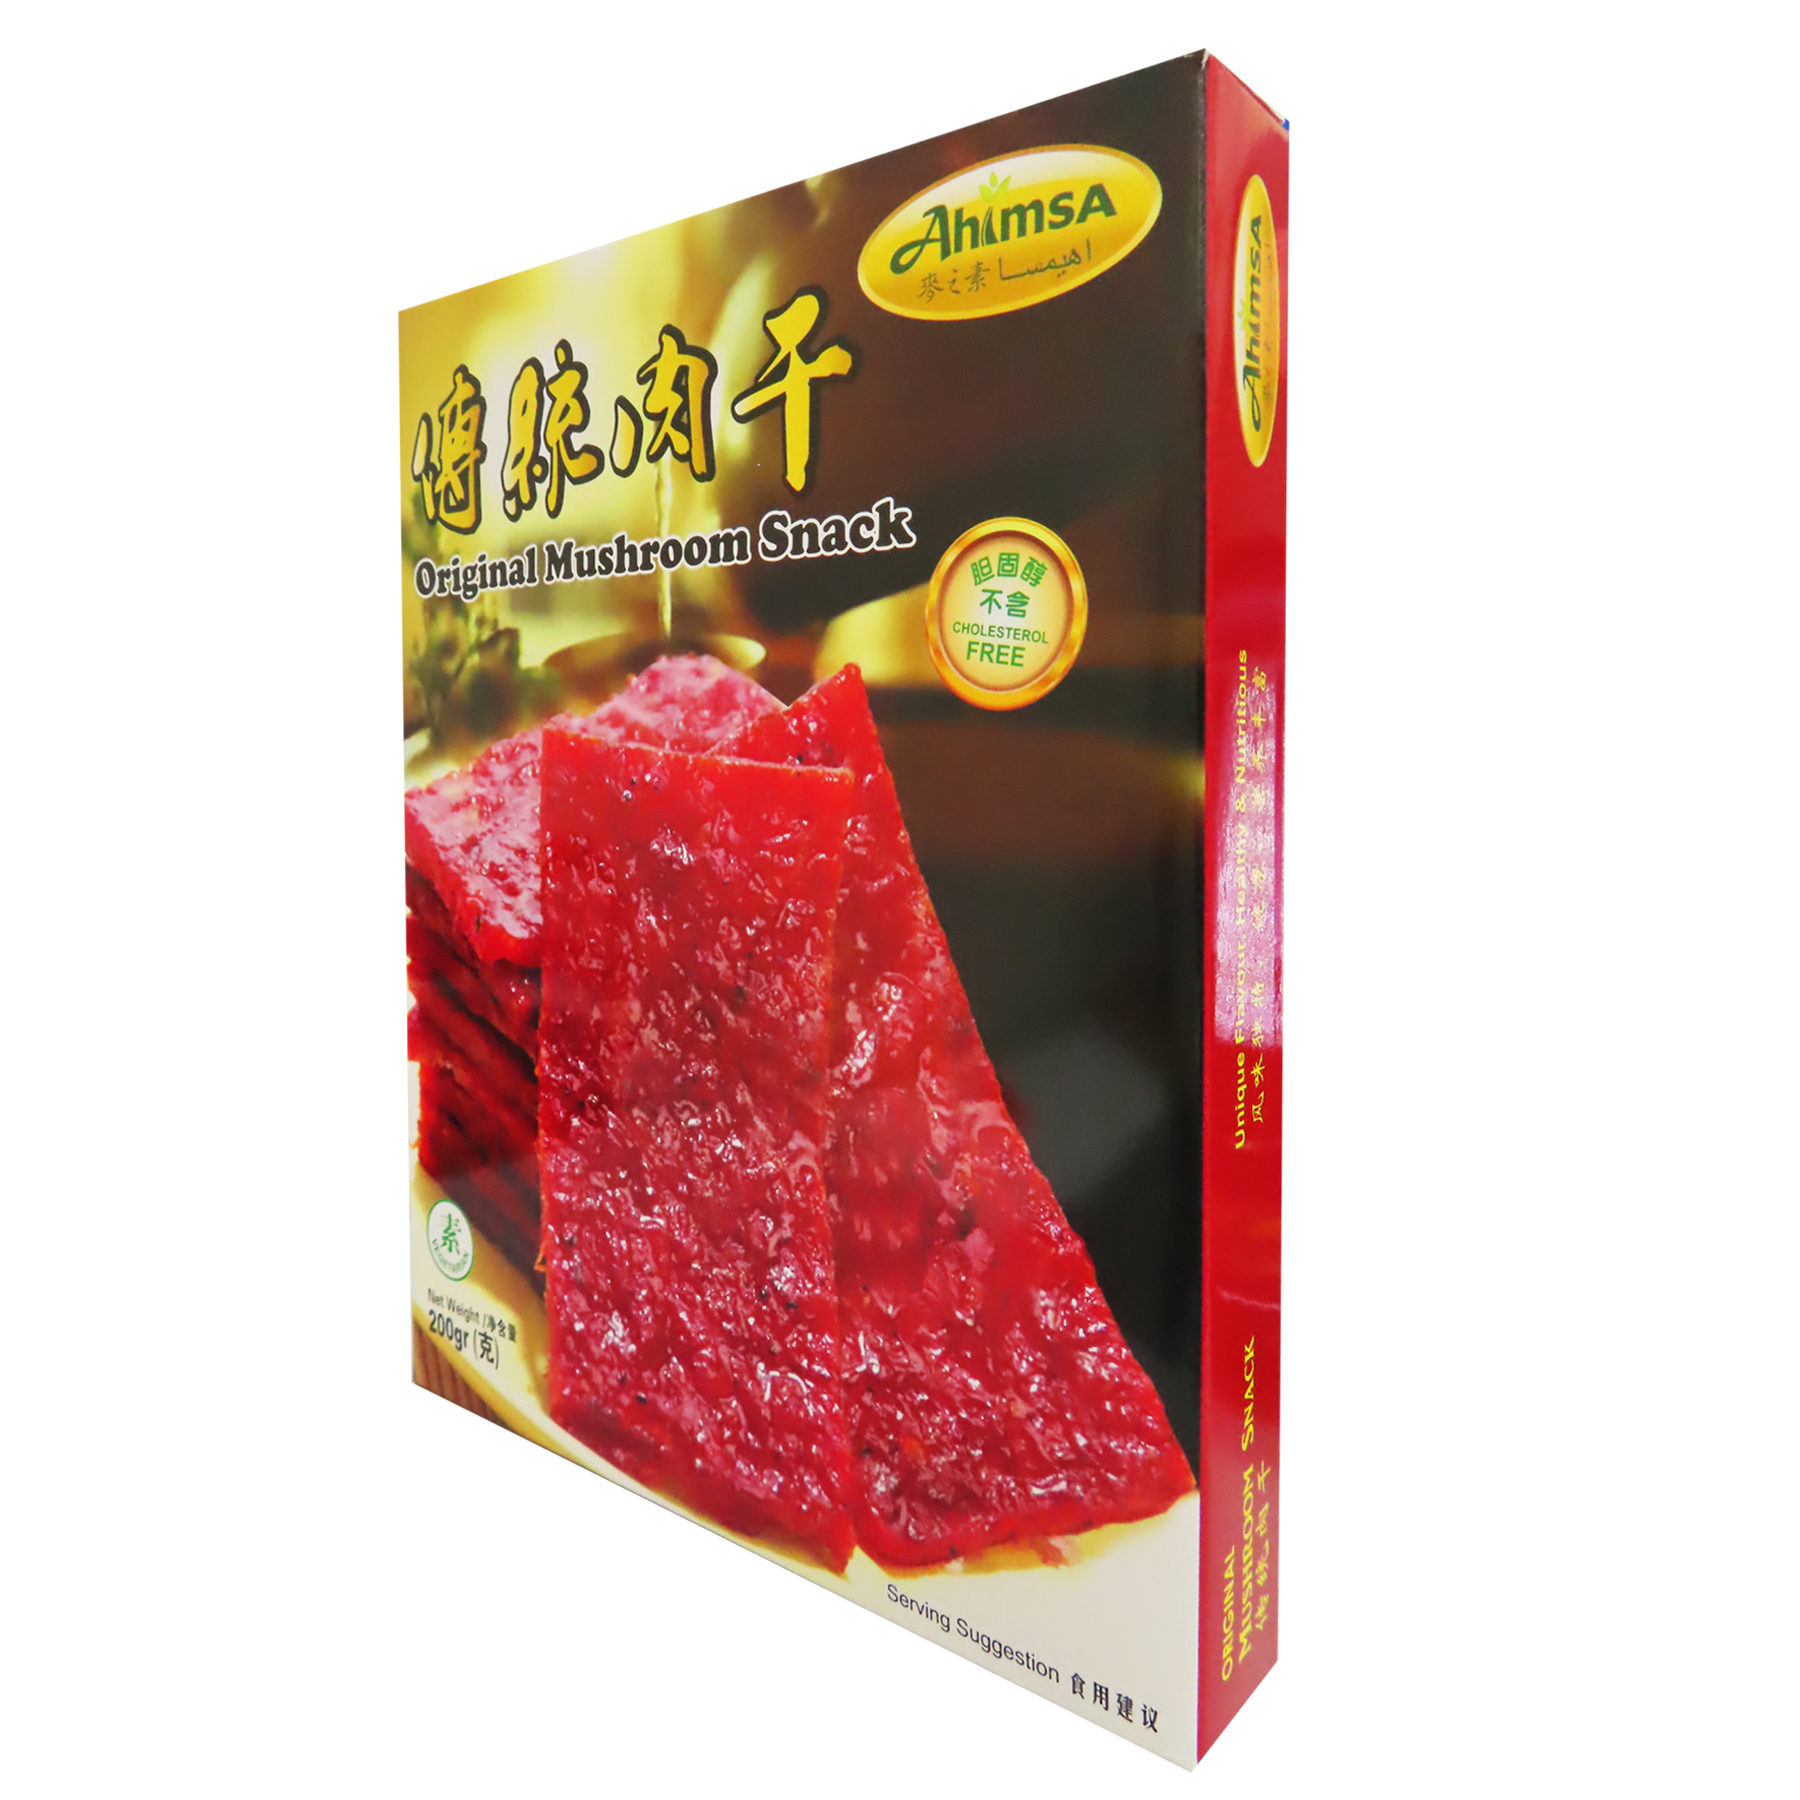 Image Original Mushroom Snack 麦之素 - 传统肉干(原味) 200grams